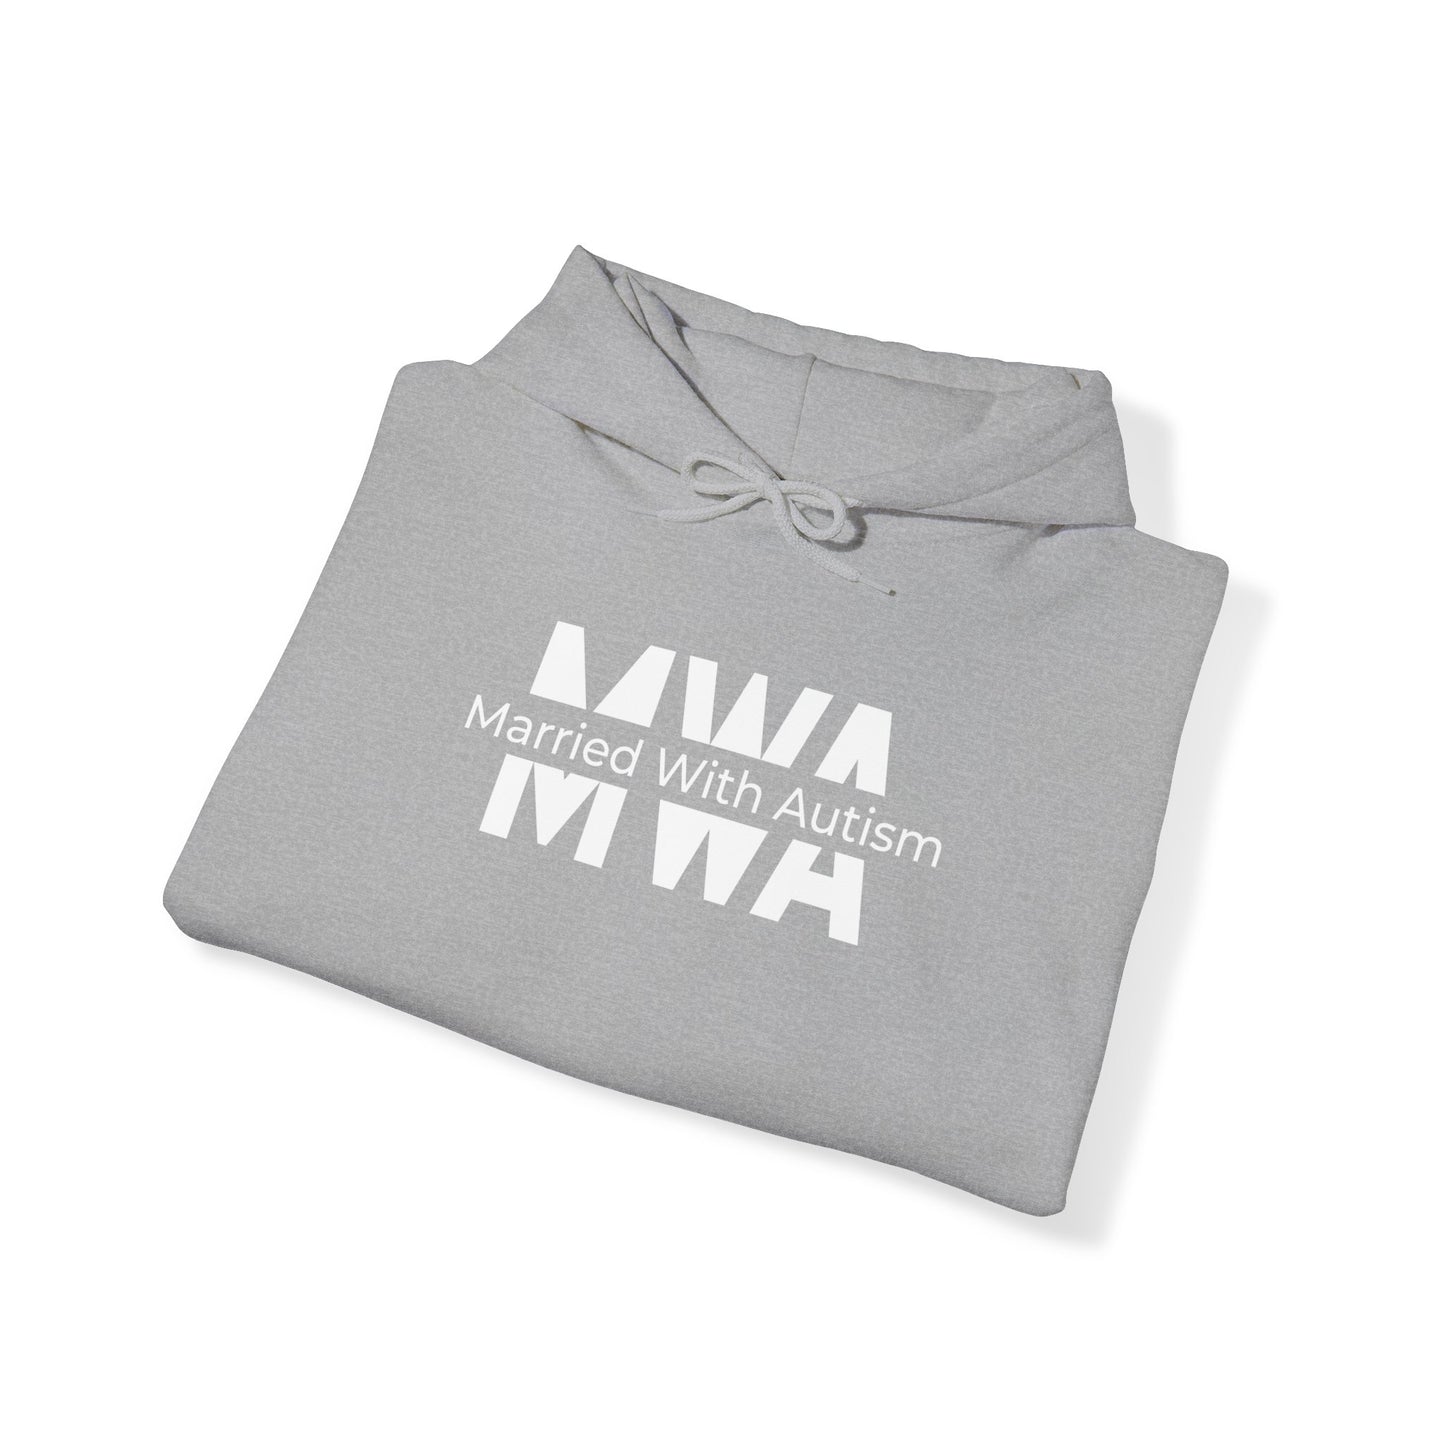 MWA Colored Hooded Sweatshirt